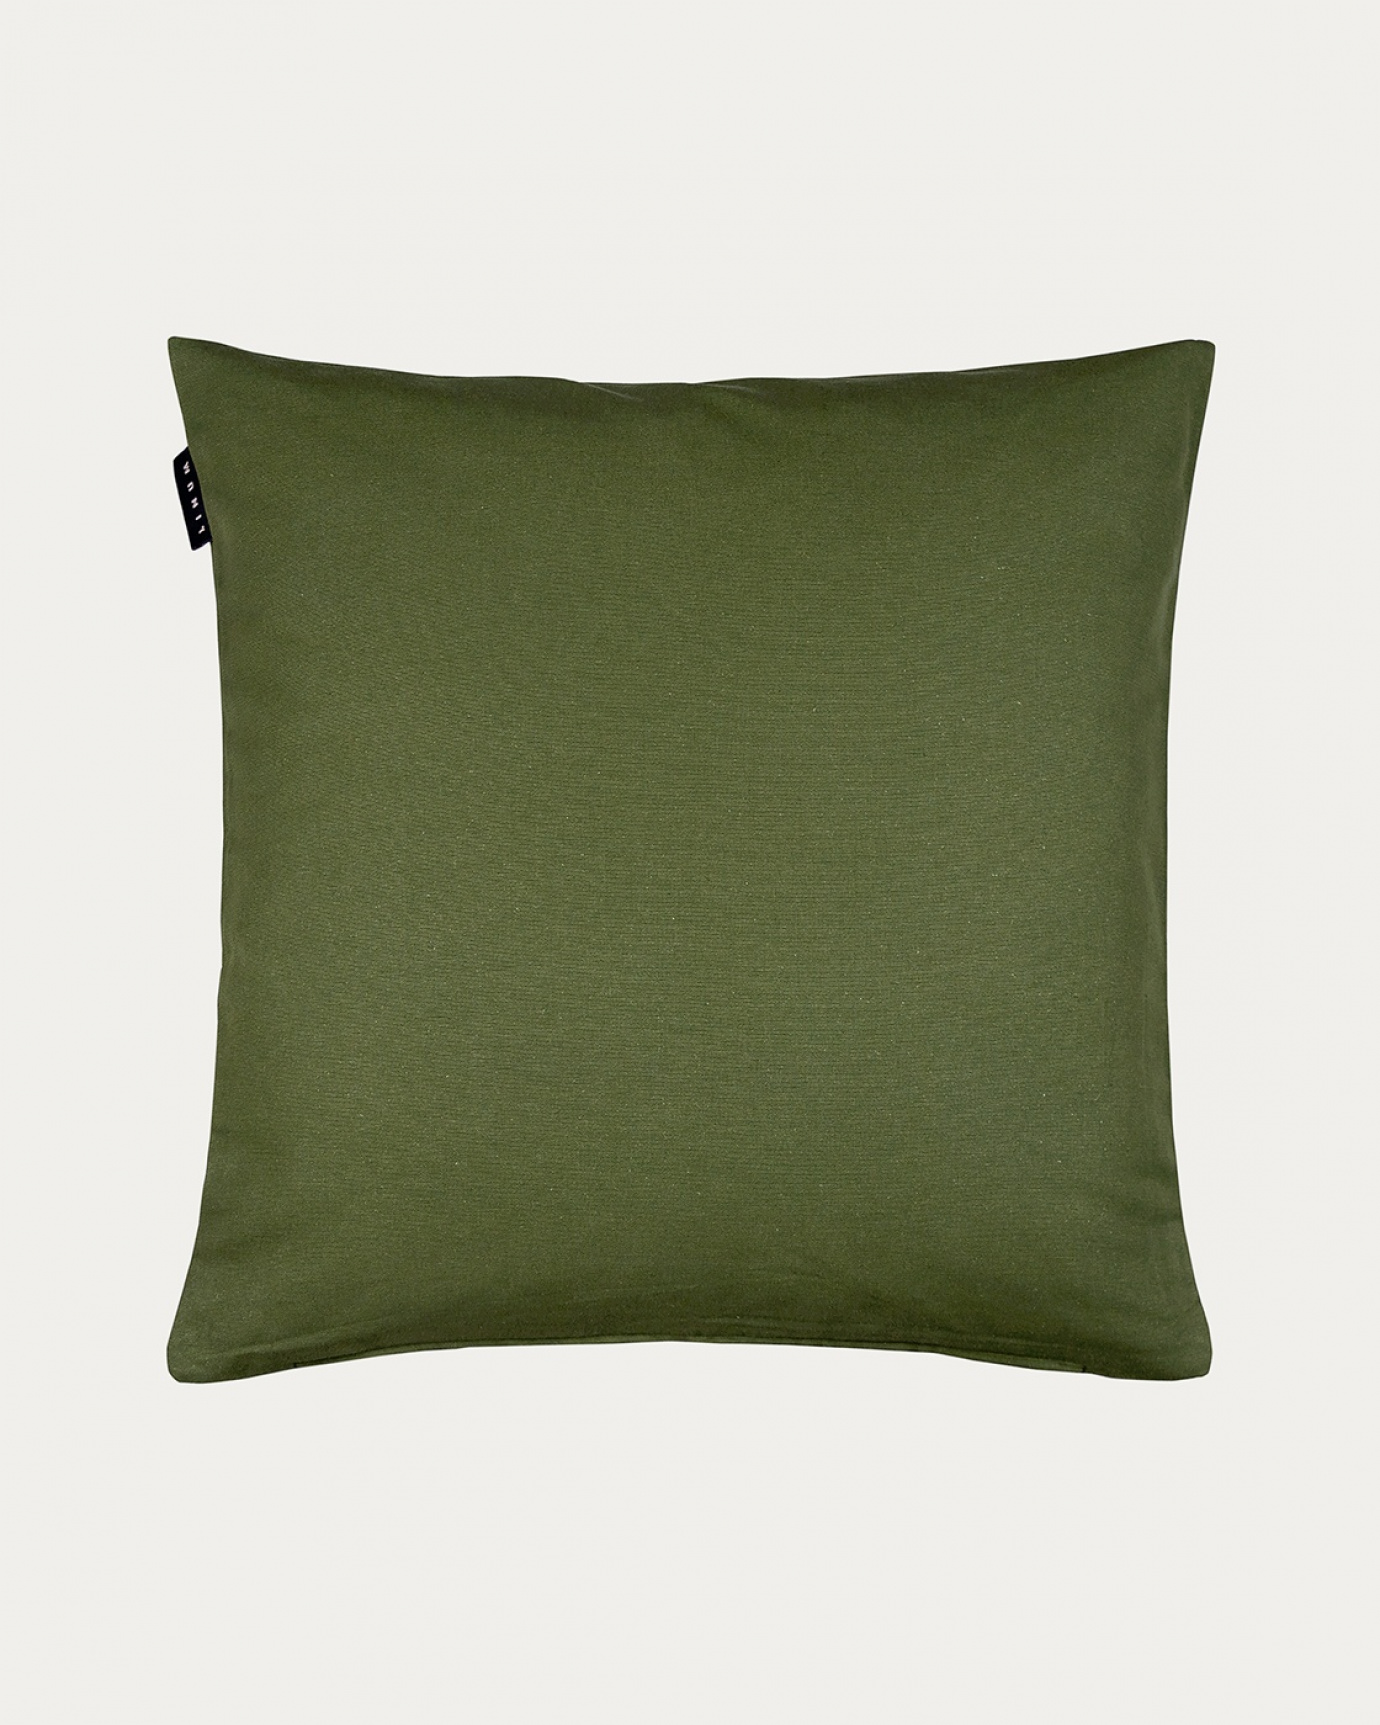 Produktbild dunkles olivgrün ANNABELL Kissenhülle aus weicher Baumwolle von LINUM DESIGN. Größe 50x50 cm.